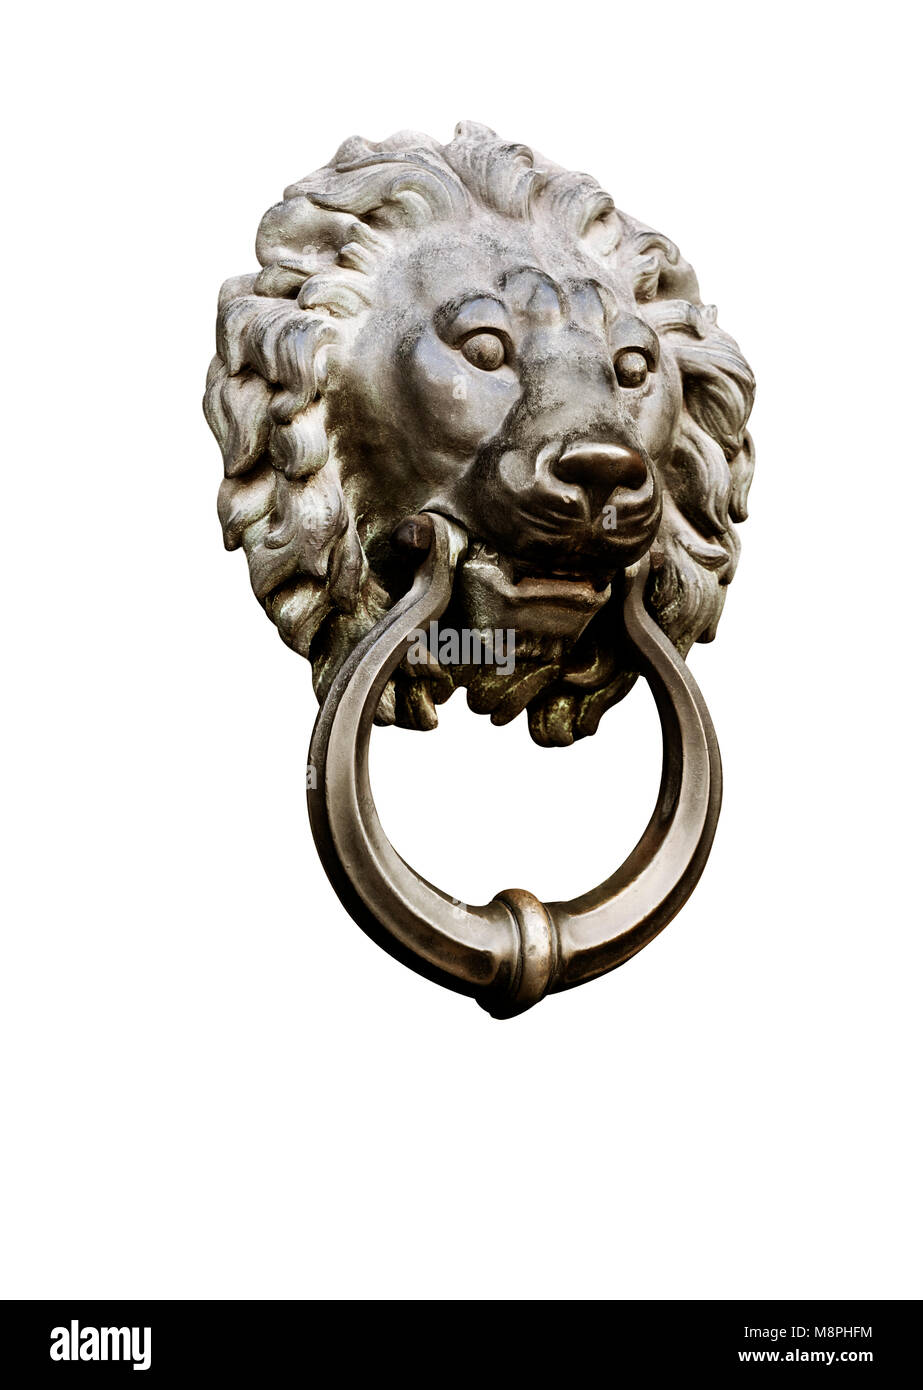 Lion head door knocker Stock Photo